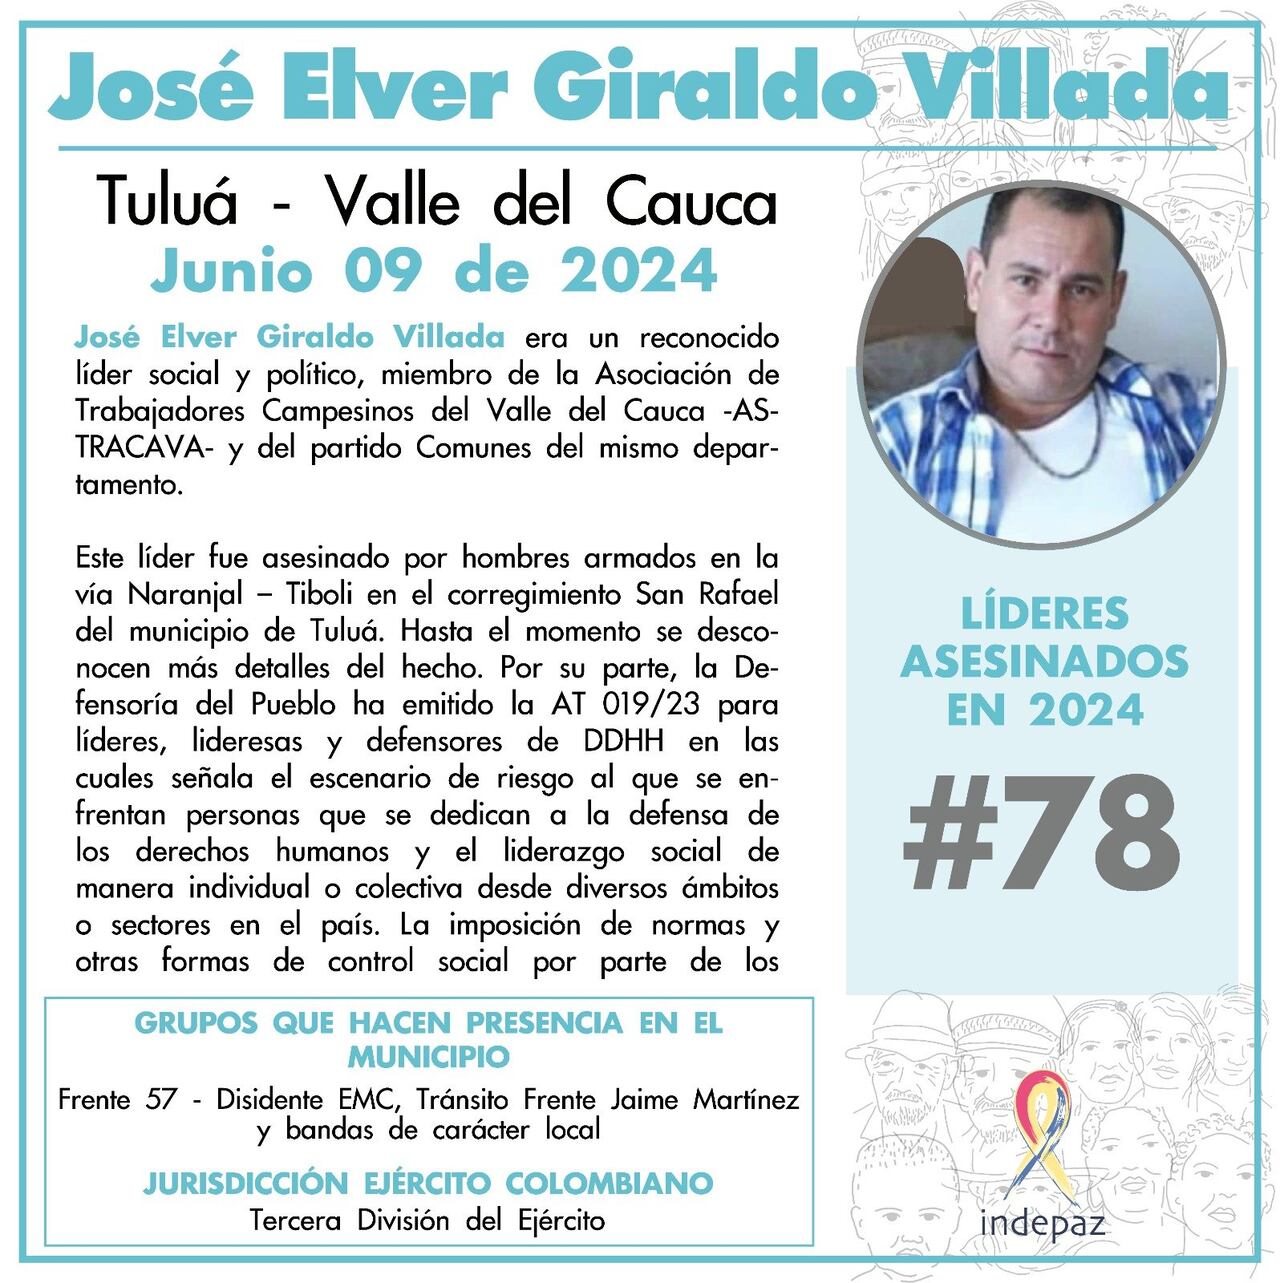 José Elver Giraldo Villada, destacado líder social y político del Valle del Cauca, fue asesinado por hombres armados en la vía Naranjal - Tibolí, en el corregimiento San Rafael del municipio de Tuluá.